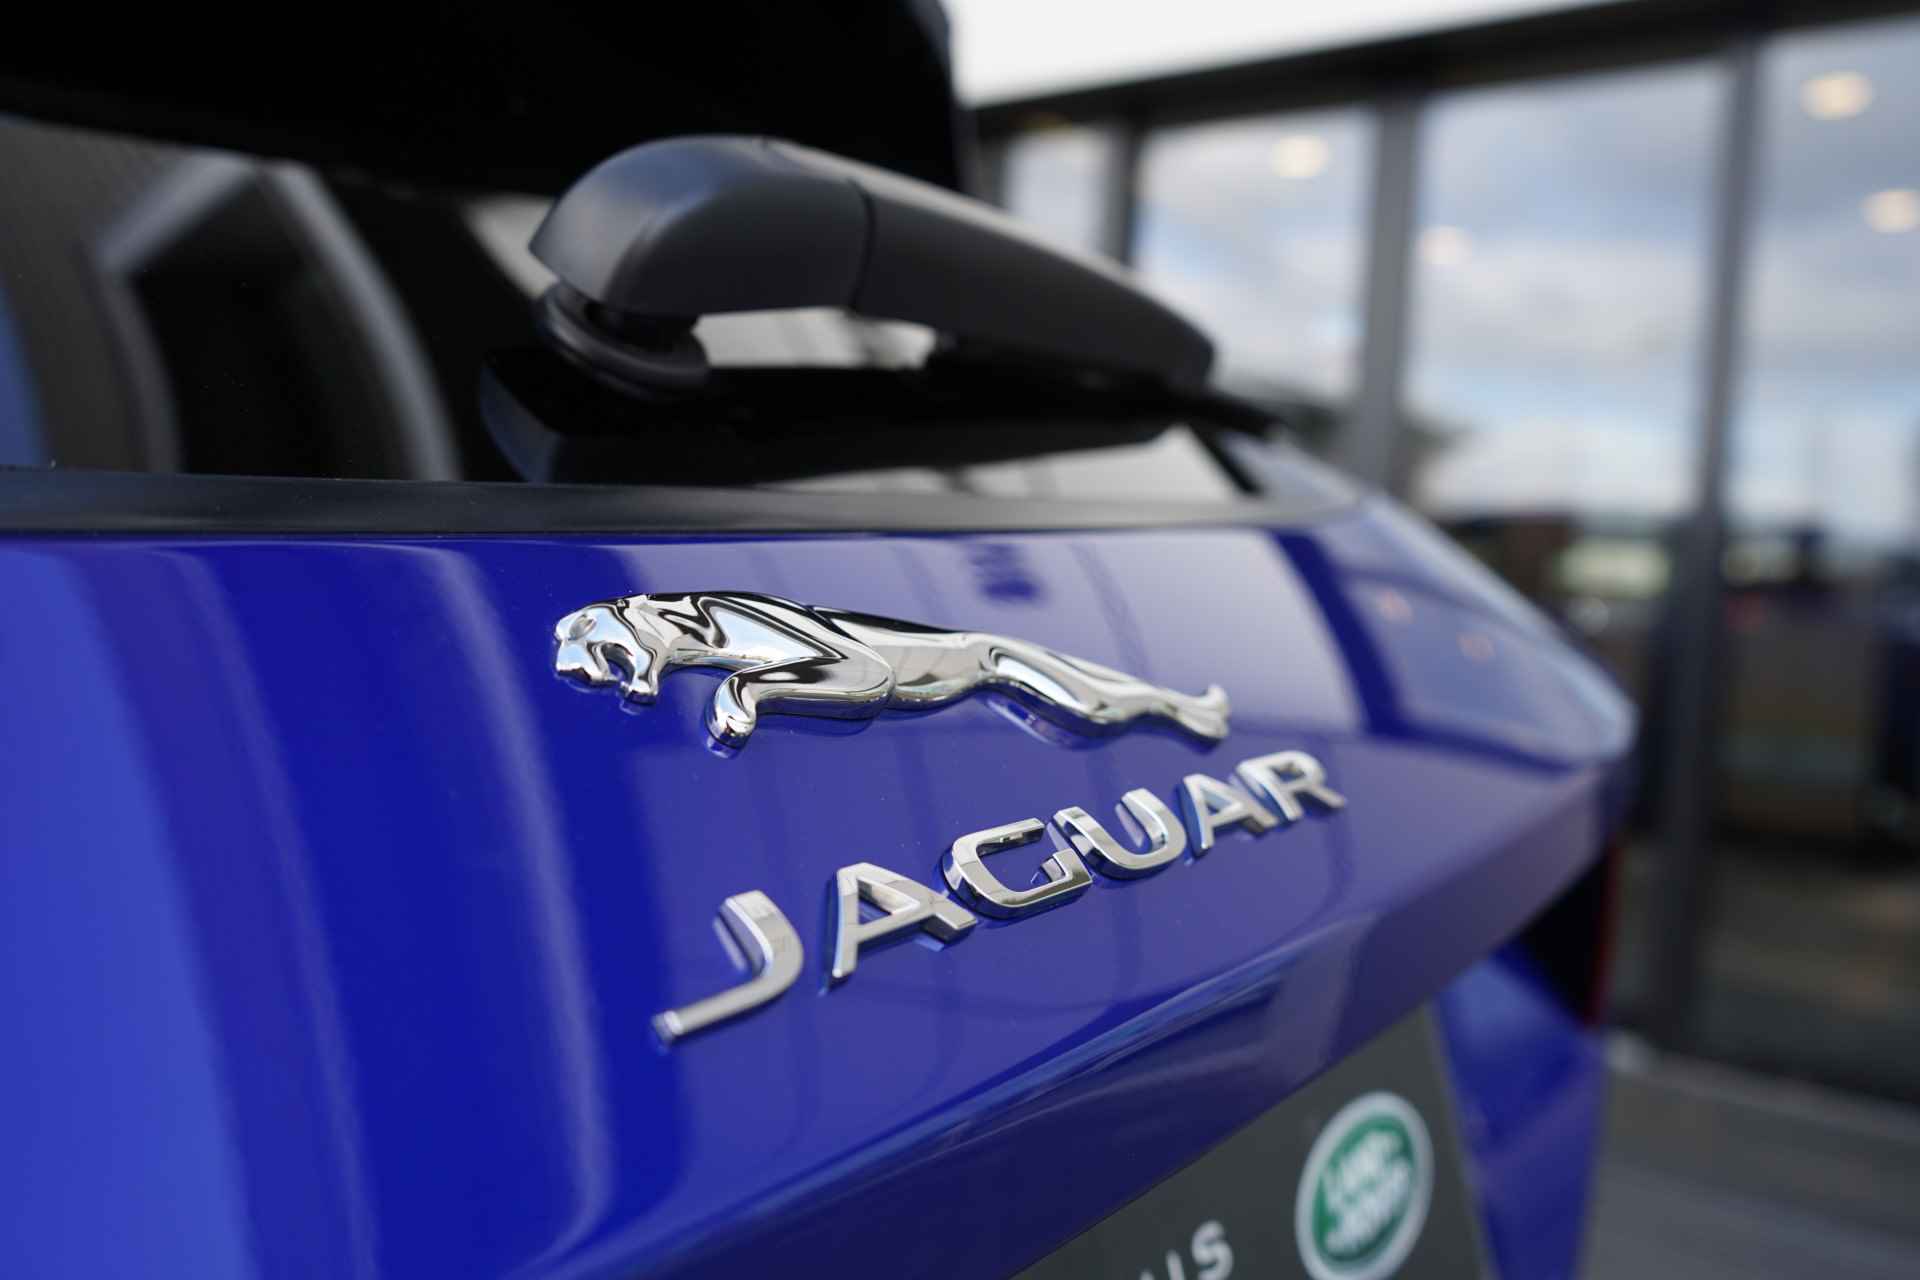 Jaguar E-Pace 2.0 P250 AWD R-Dynamic - Black Exterior Pack - 33/36